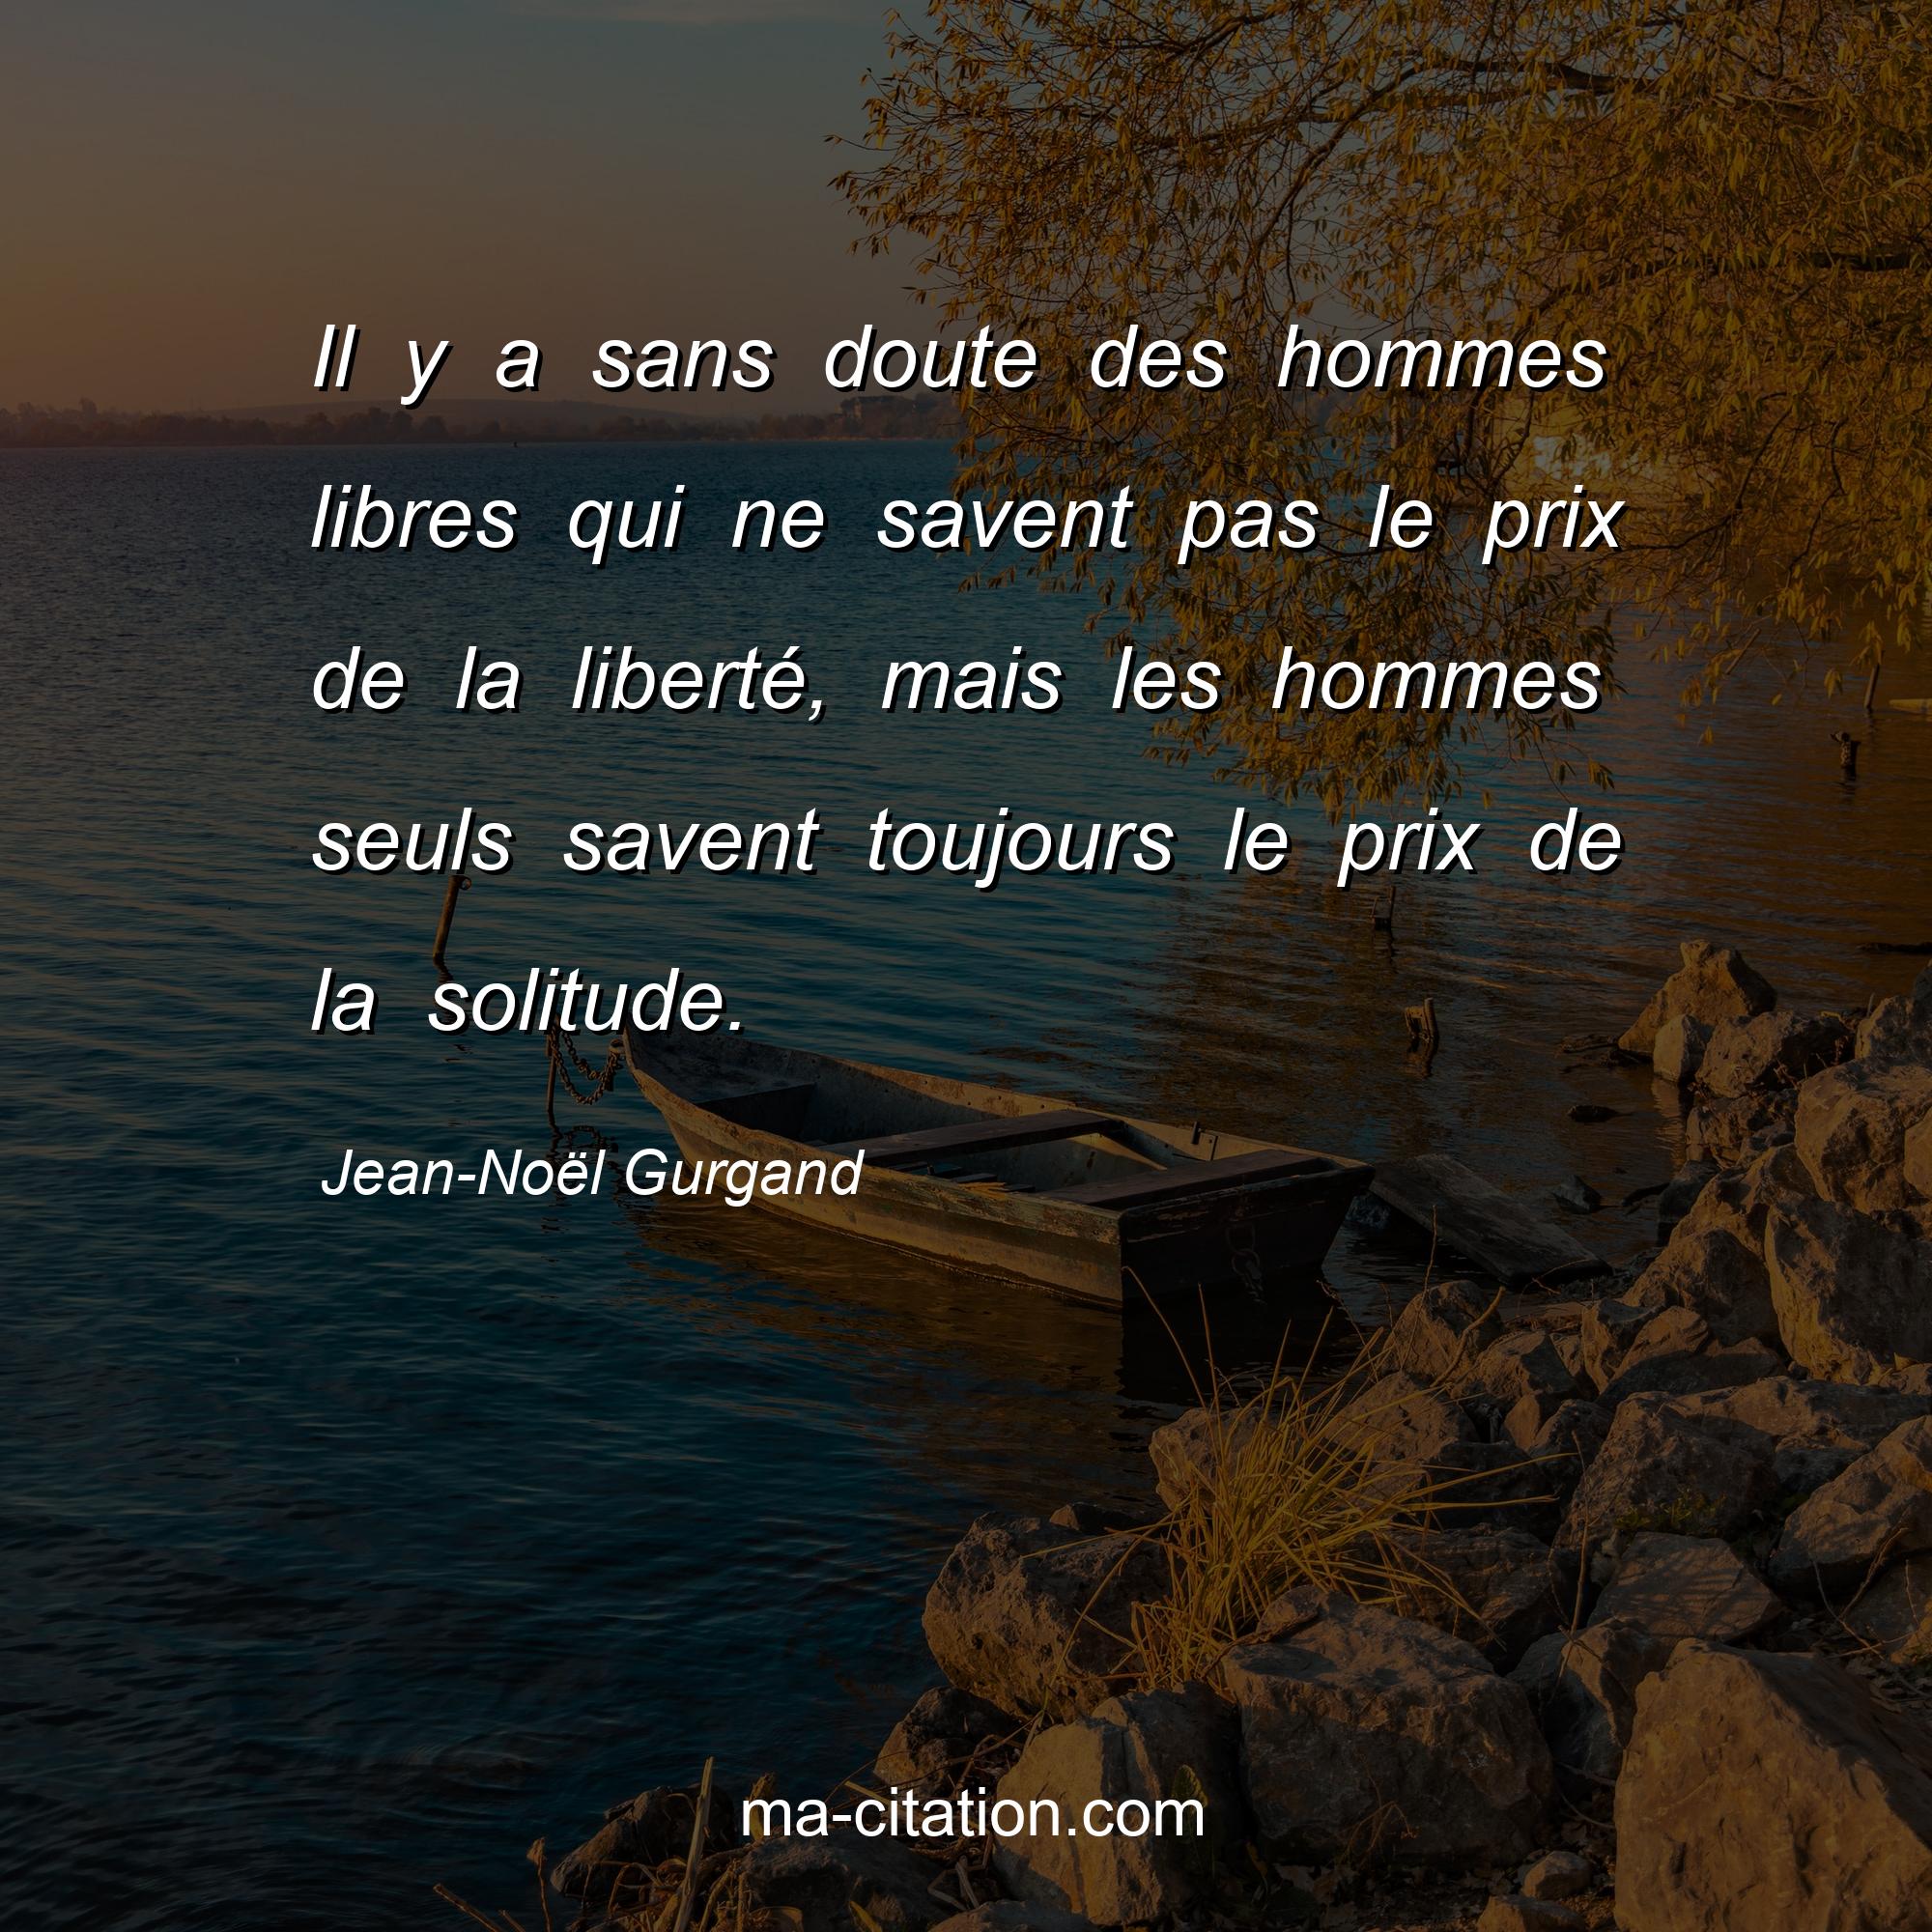 Jean-Noël Gurgand : Il y a sans doute des hommes libres qui ne savent pas le prix de la liberté, mais les hommes seuls savent toujours le prix de la solitude.